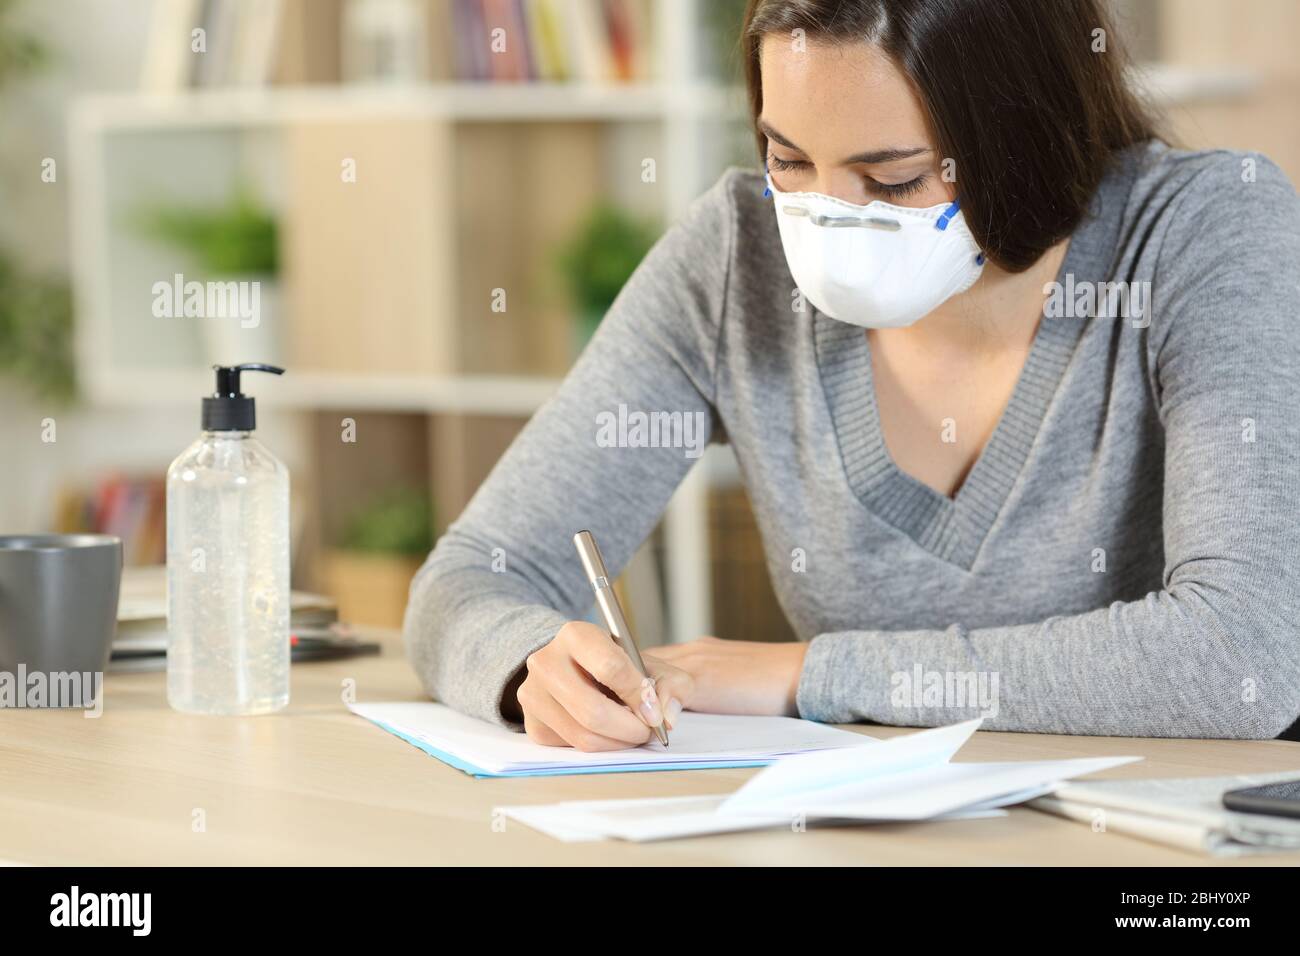 Mujer con máscara protectora debido coronavirus escribiendo carta sentada en un escritorio en casa Foto de stock